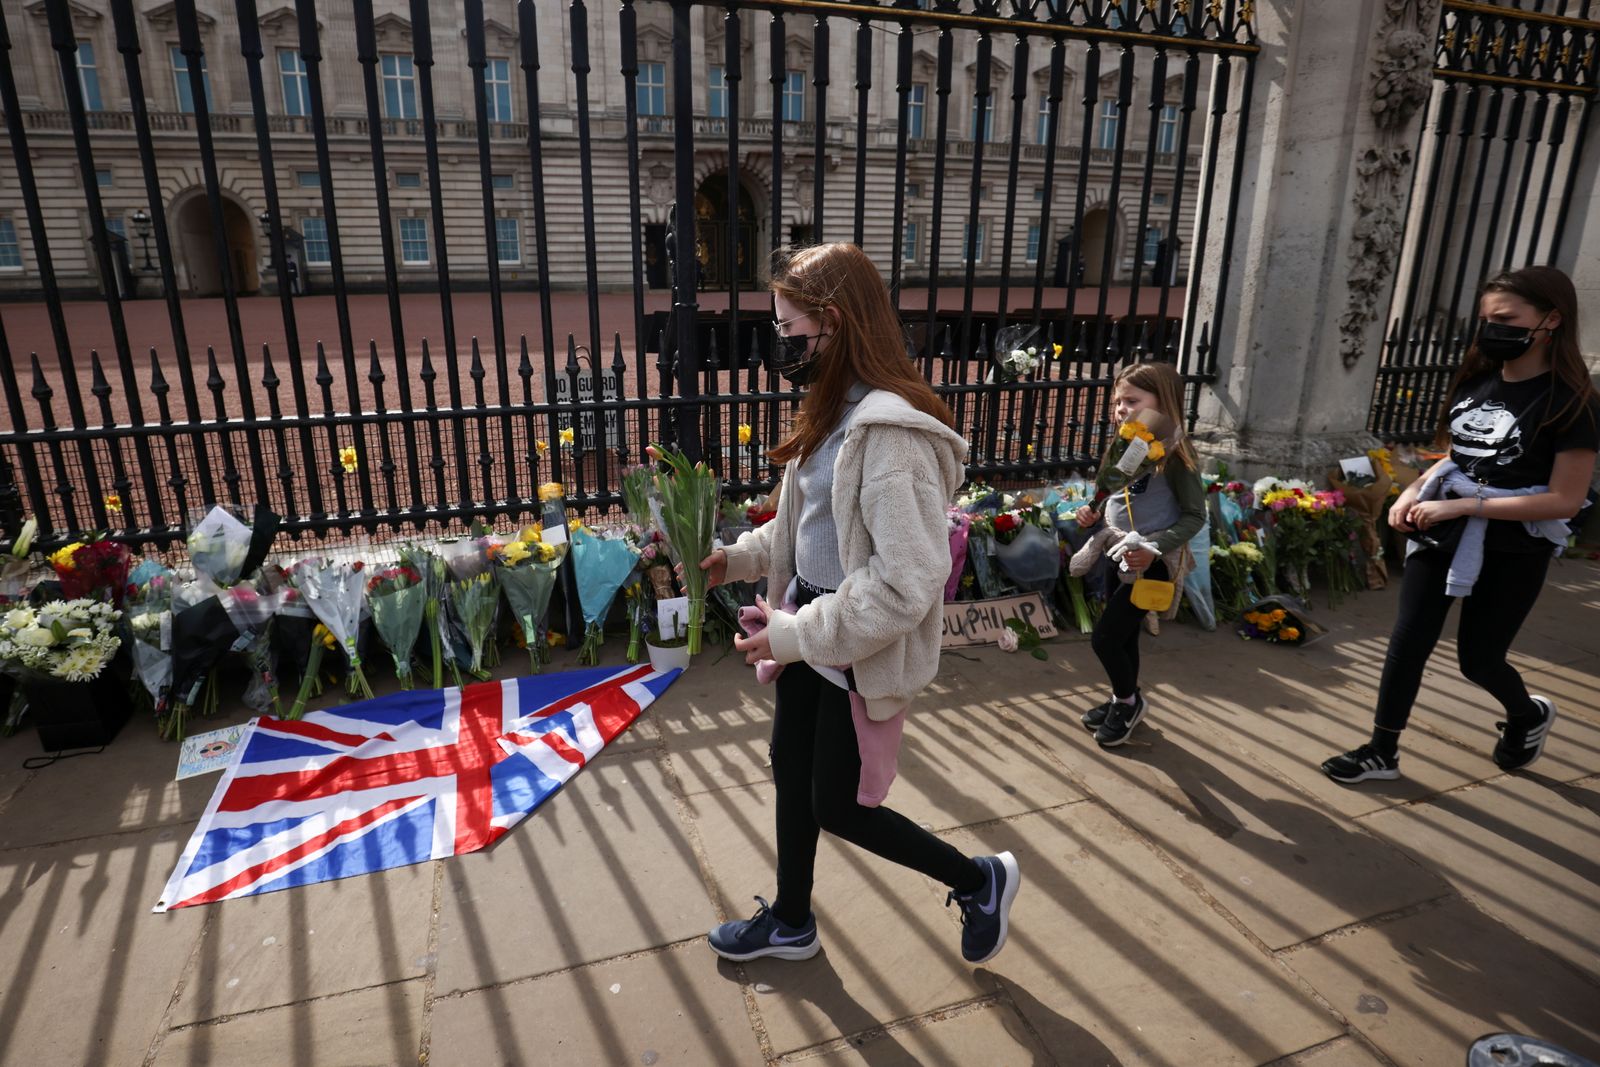 أطفال يضعون الزهور أمام قصر باكنغهام الملكي وسط لندن بعد الإعلان عن وفاة دوق أدنبرة الأمير فيليب- 9 أبريل 2021 - REUTERS